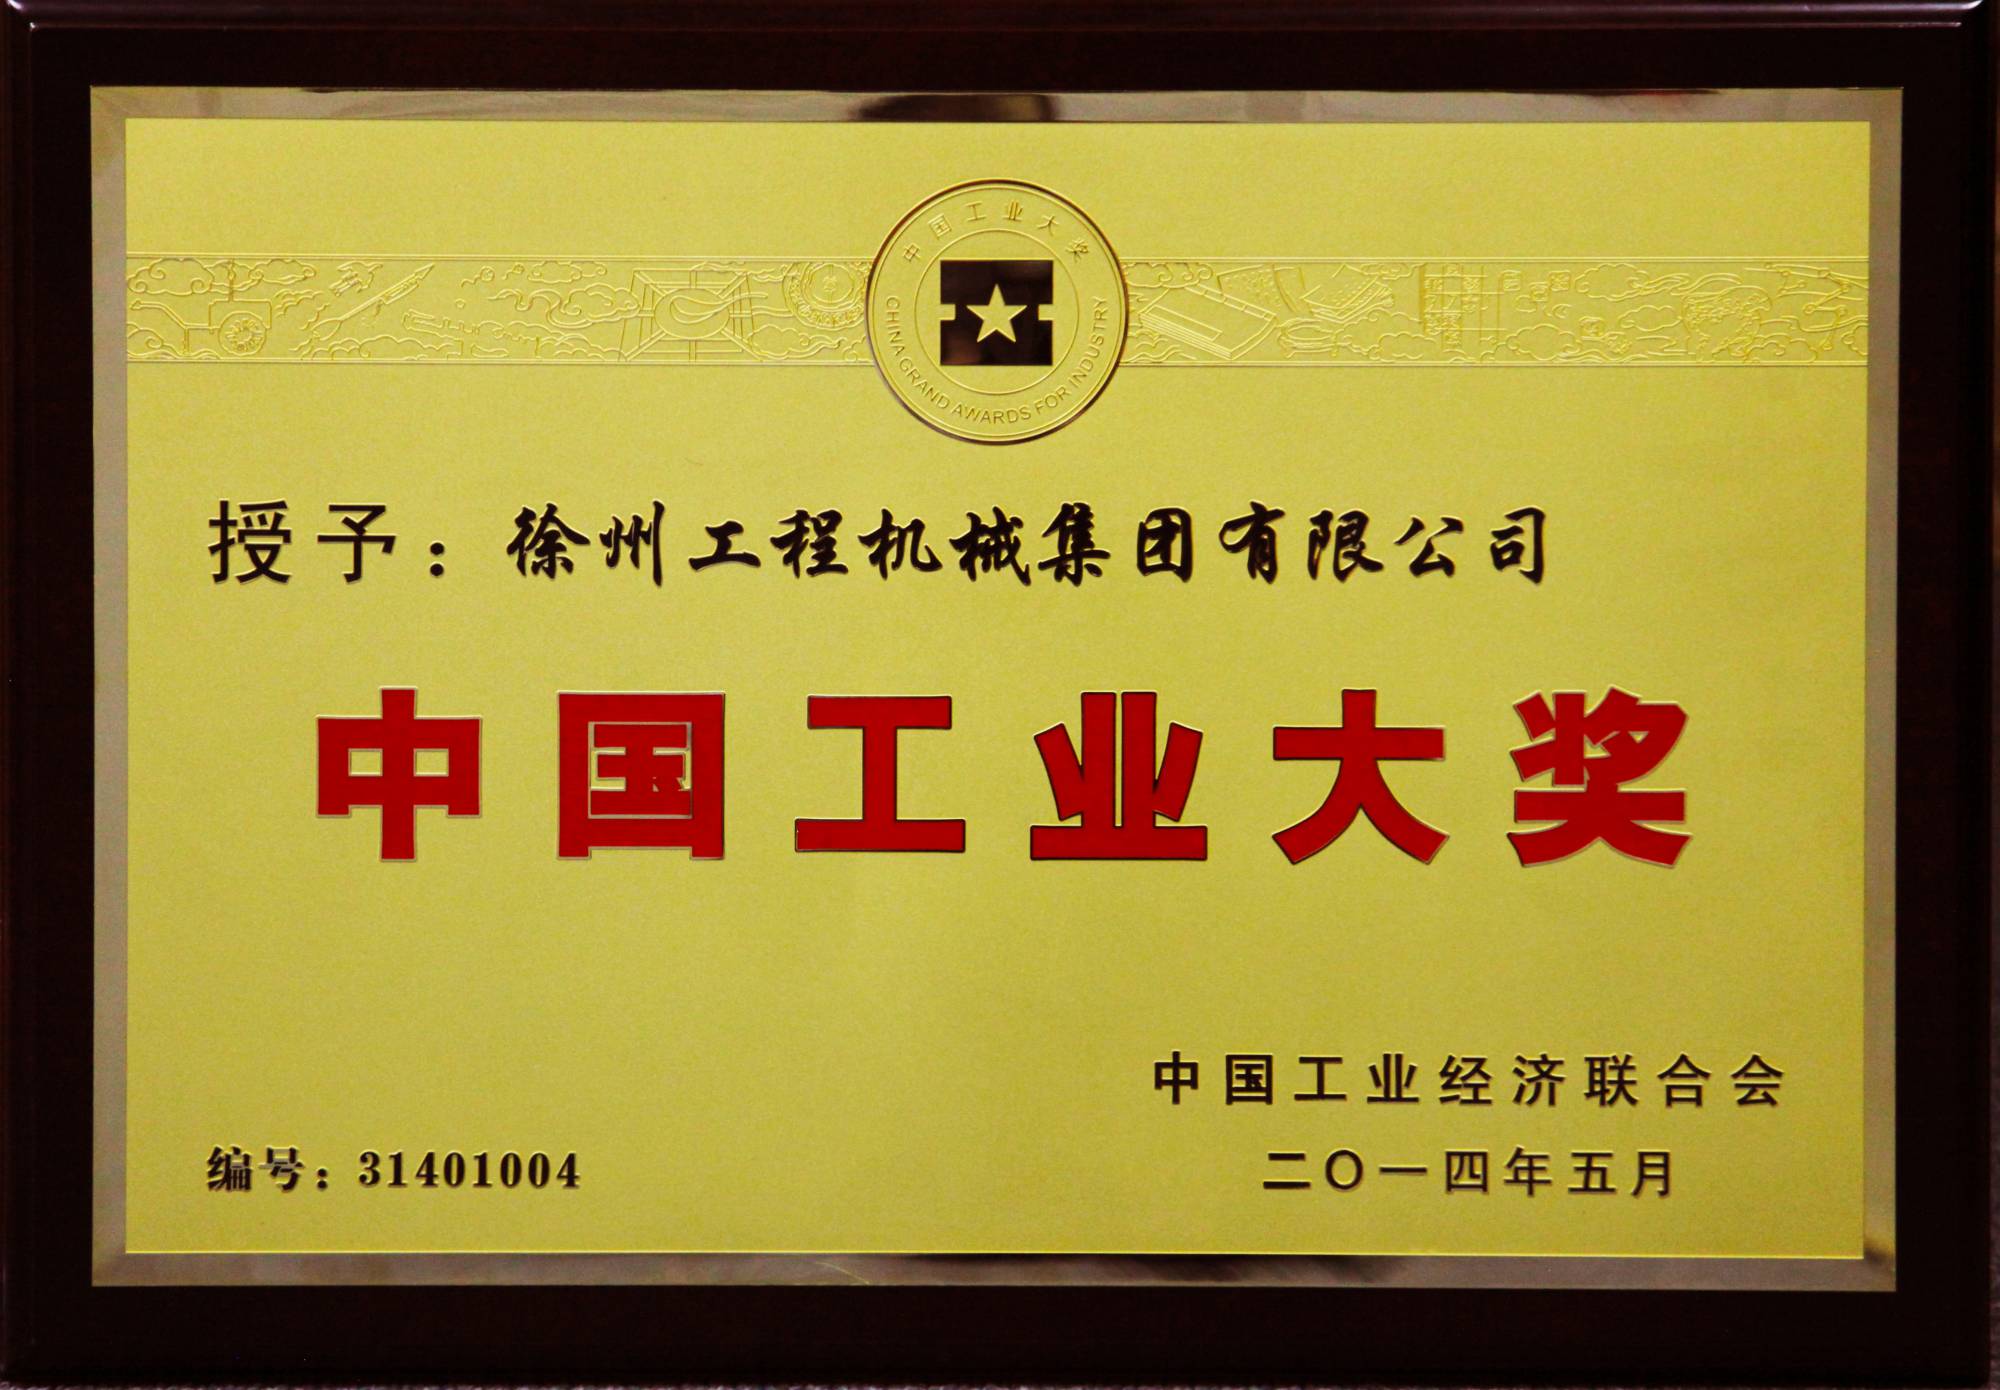 徐工榮膺行業唯一的中國工業領域最高獎項——中國工業大獎